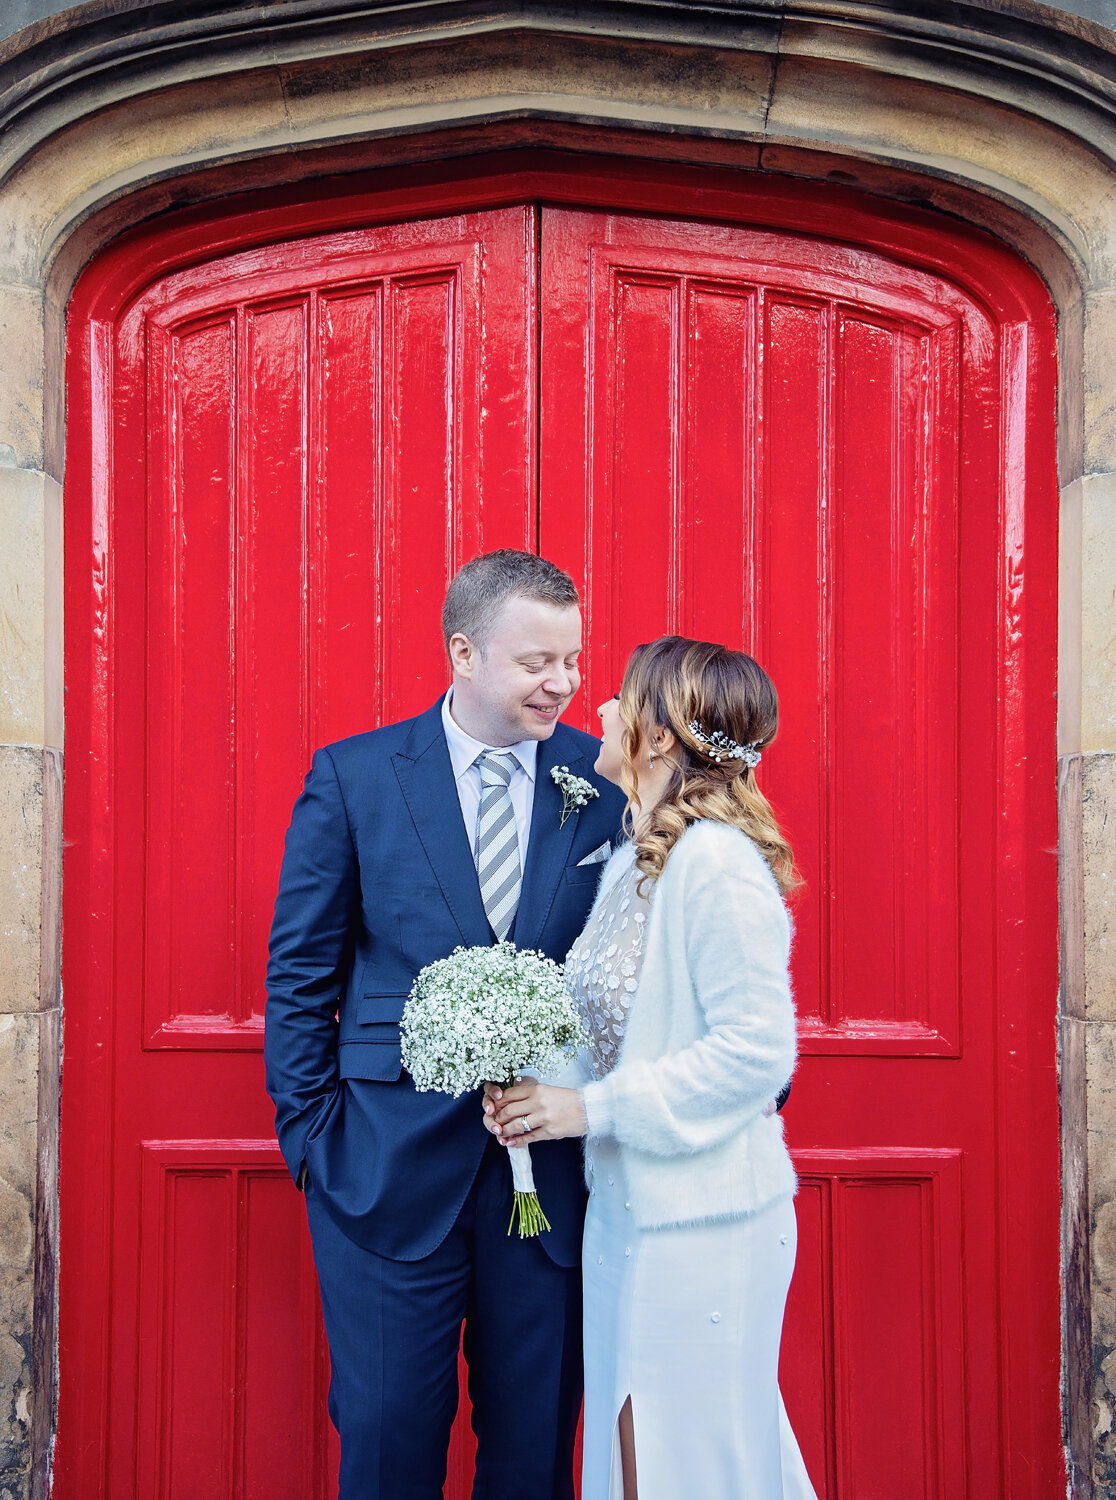 001-red door-cambridgeshire-wedding-photography.jpg